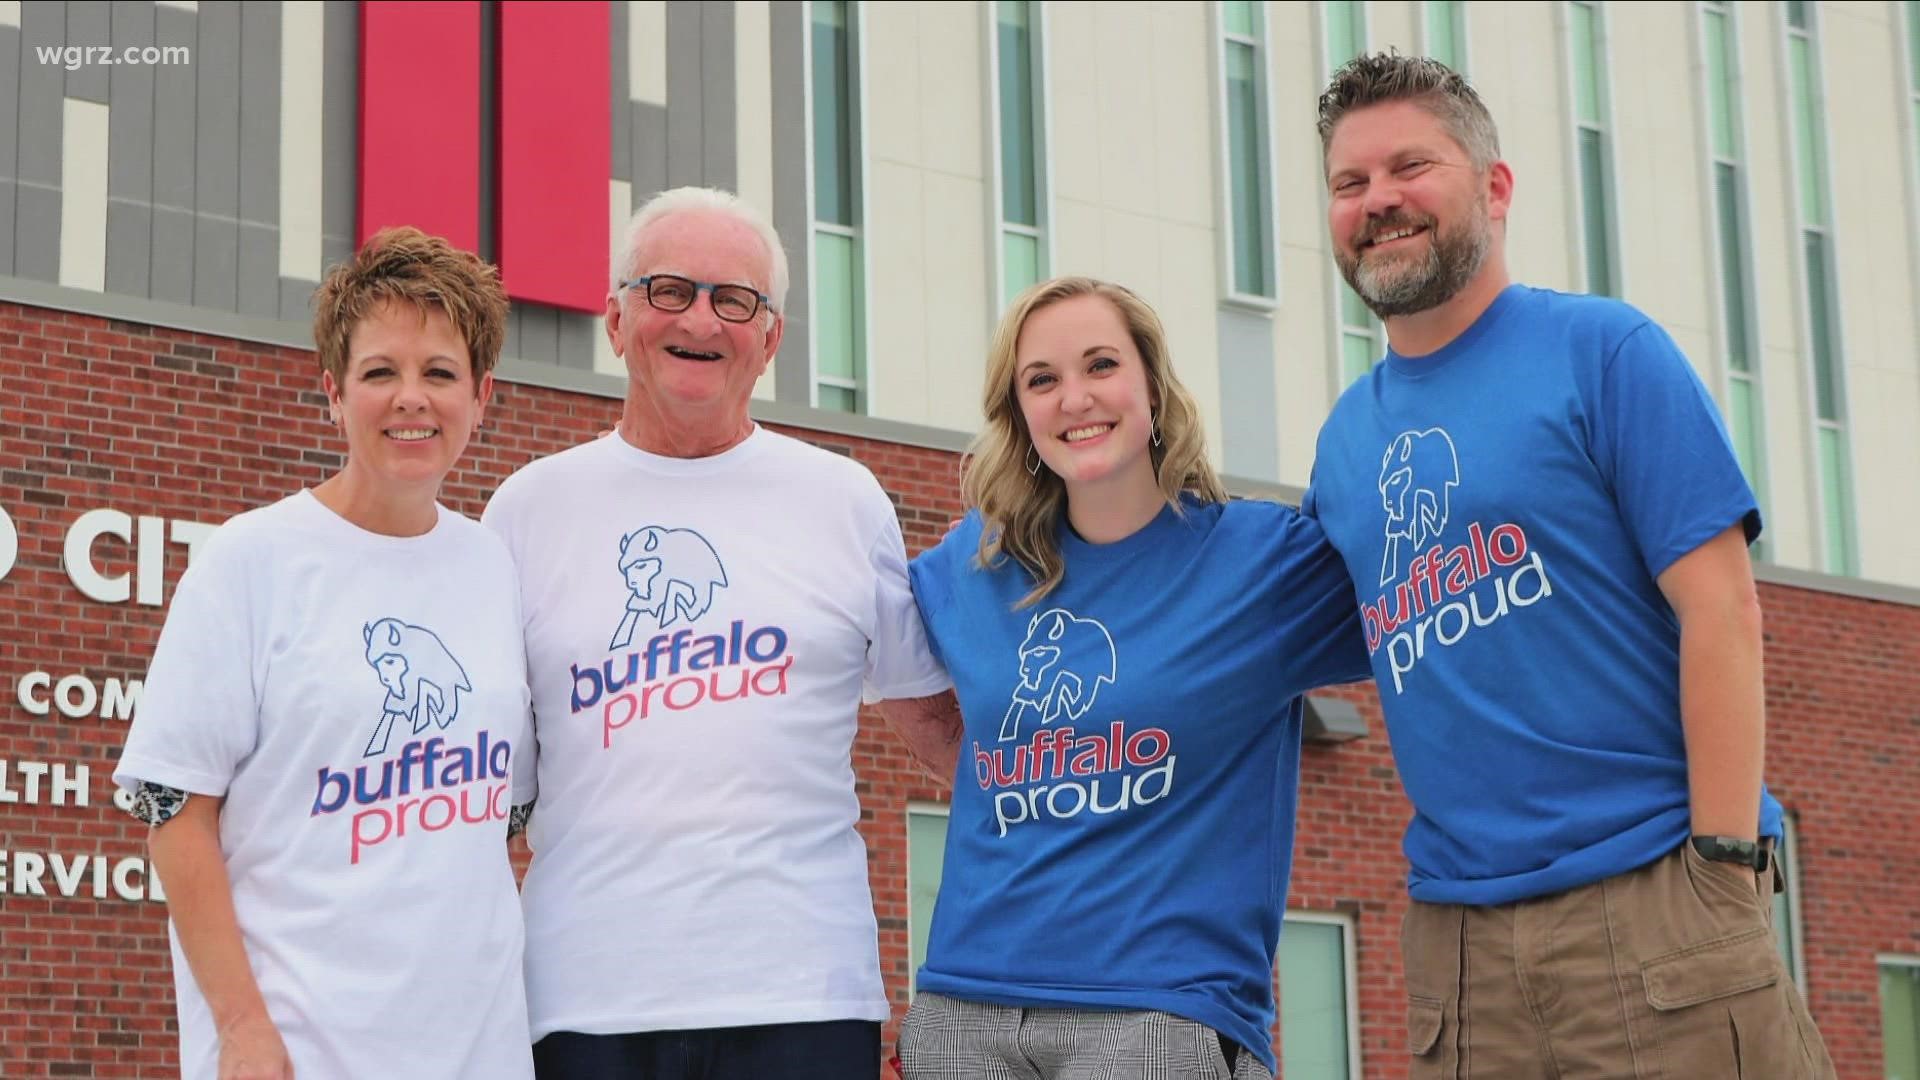 26 Shirts shirt, hat benefit Buffalo City Mission